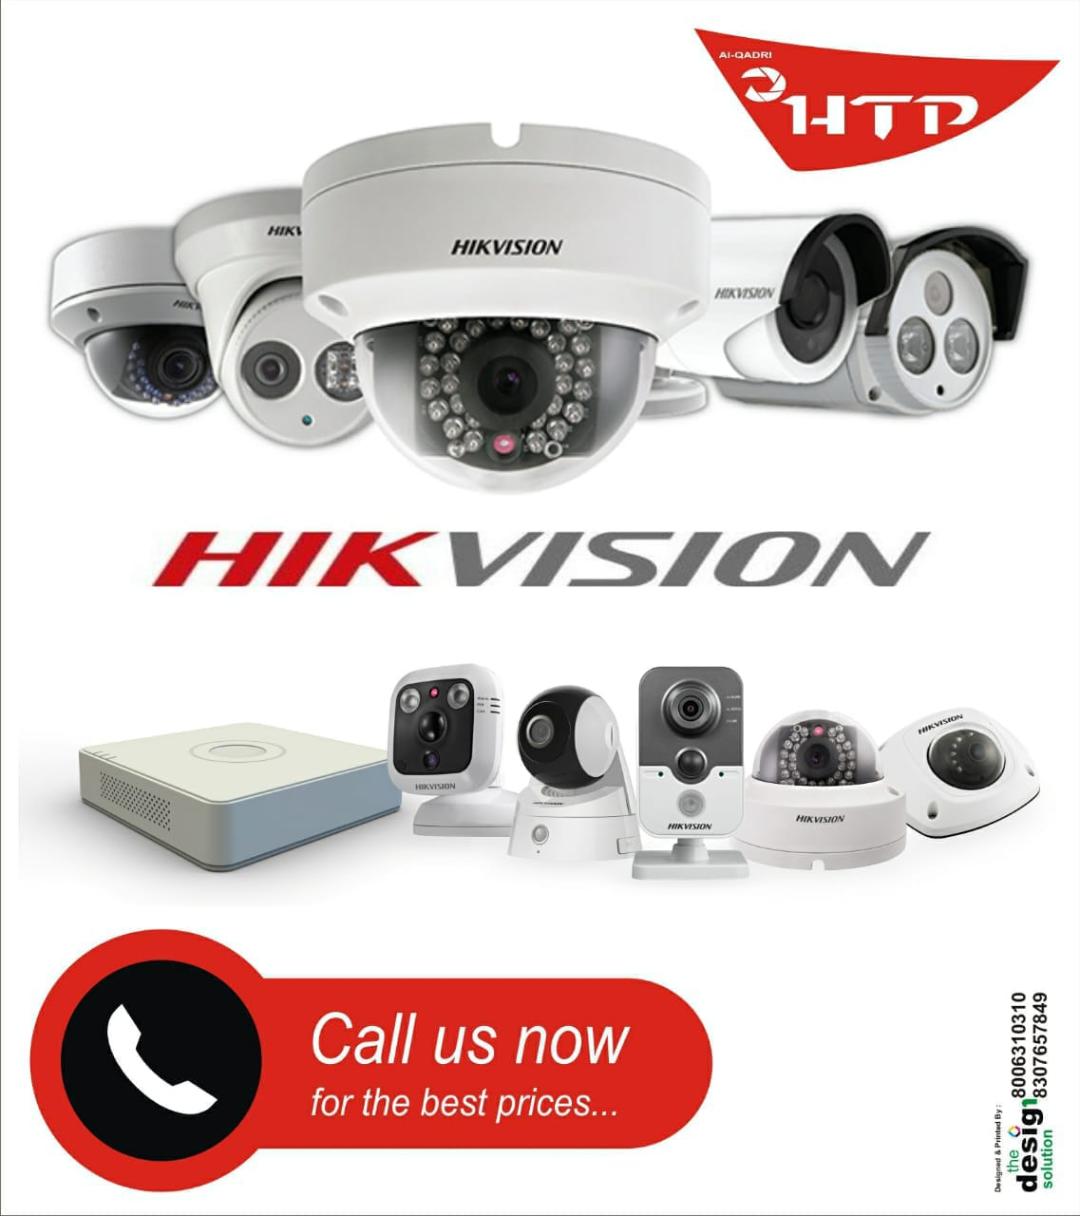 HI-TECH SERVICE PROVIDER | CCTV CAMERA SERVICE & INSTALLATION-FAINS BAZAAR